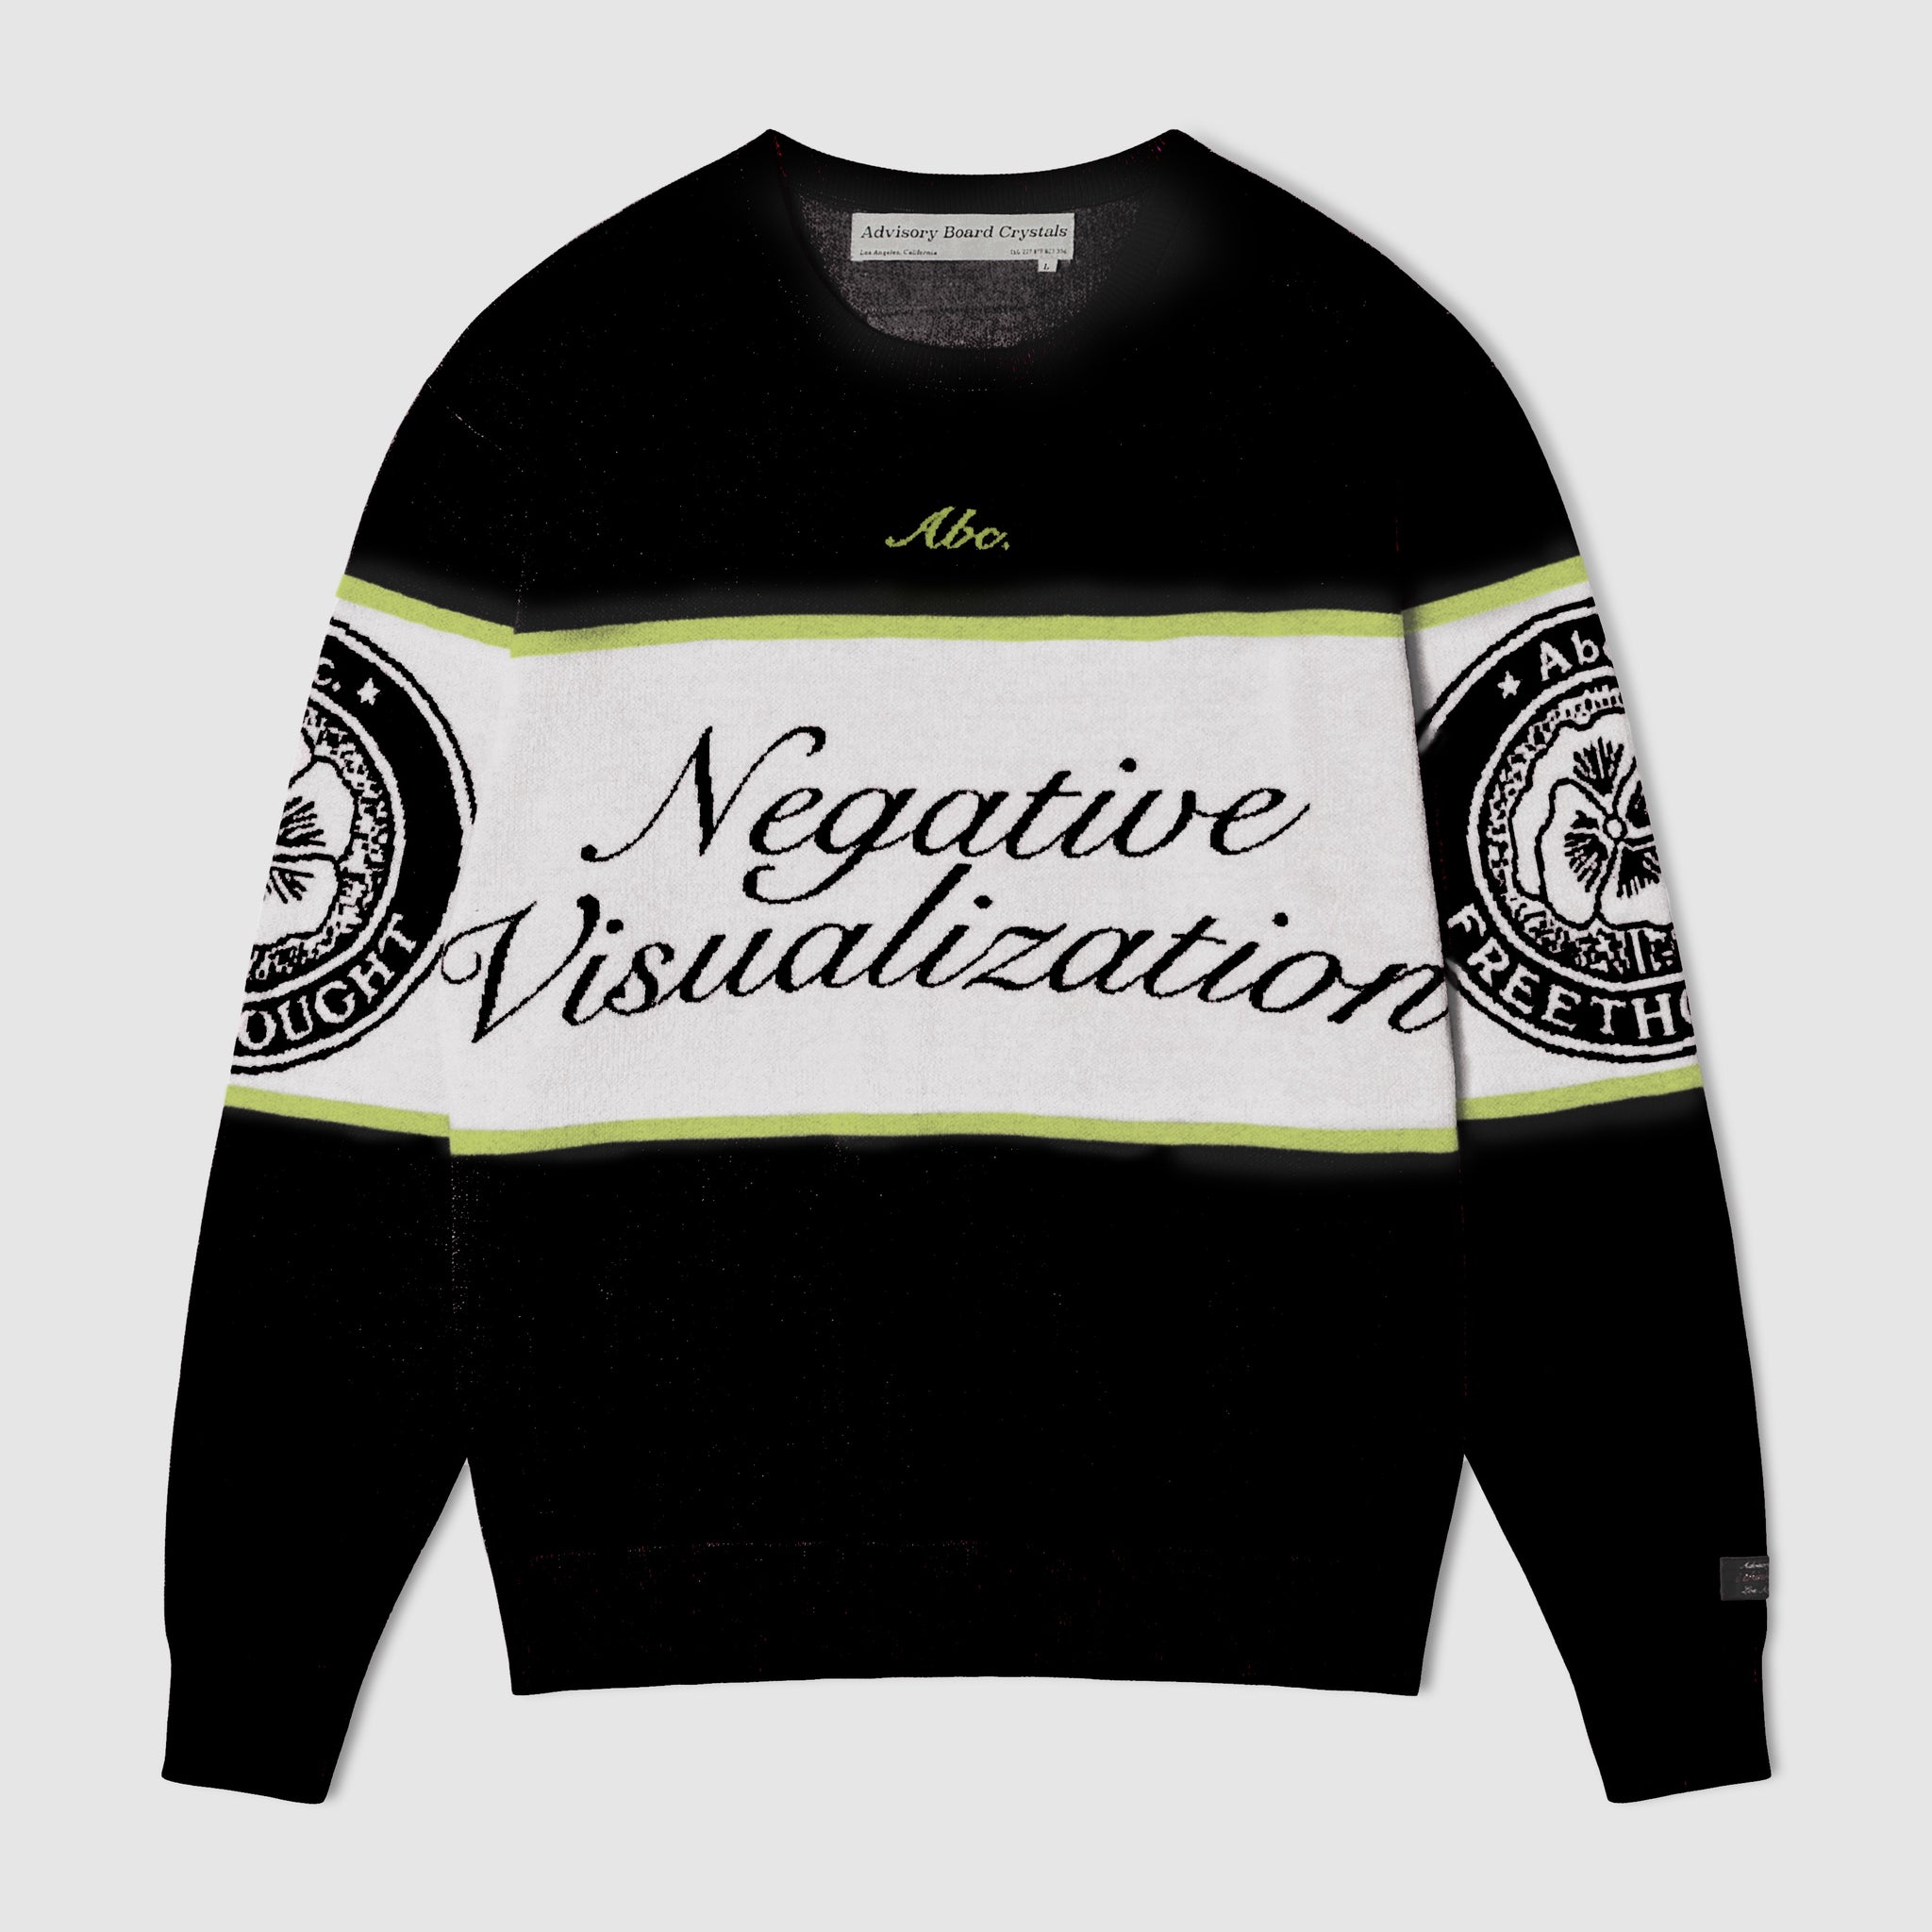 Abc. "Negative Visualization" Sweater (Black Onyx)